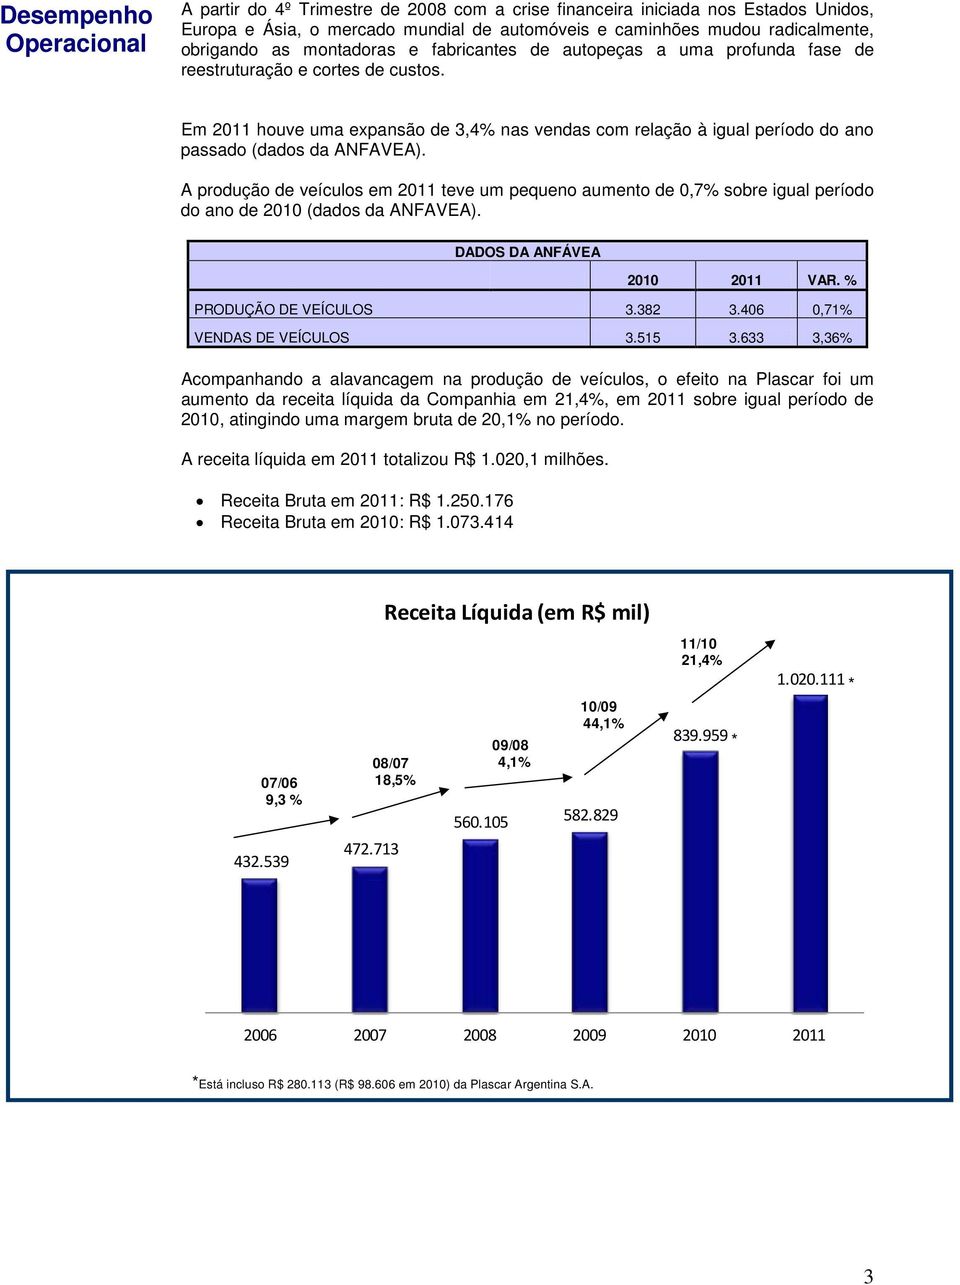 Em 2011 houve uma expansão de 3,4% nas vendas com relação à igual período do ano passado (dados da ANFAVEA).